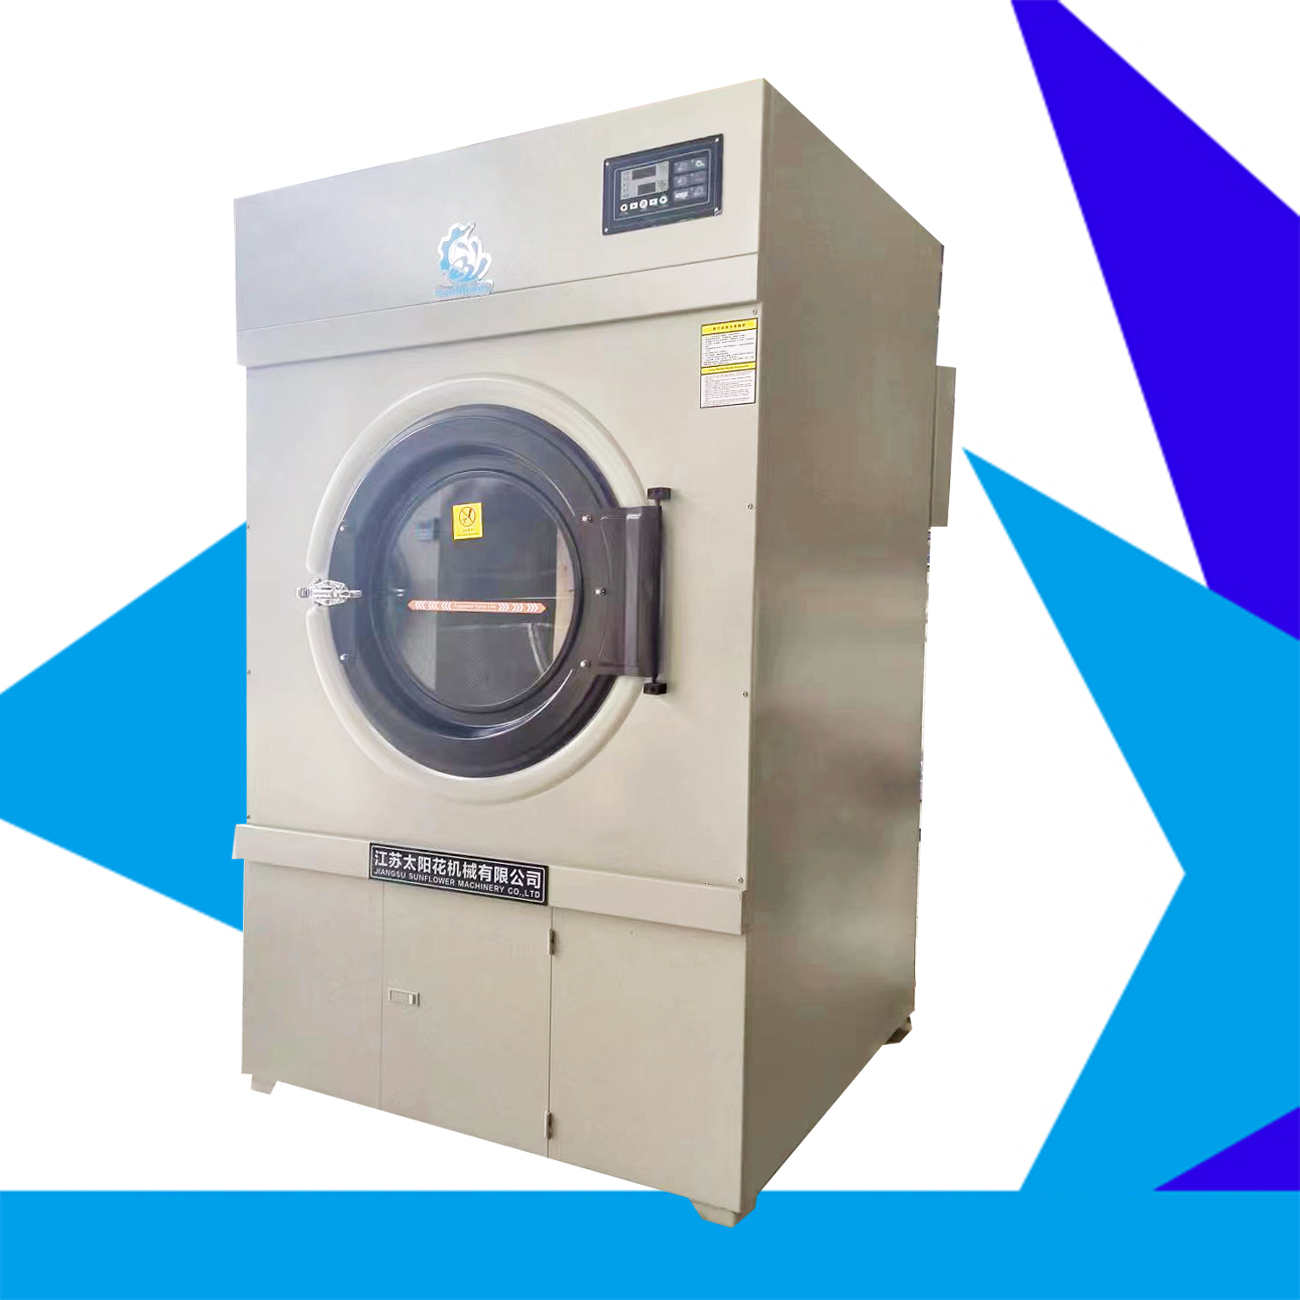 Steam heated drying machine reversing tumbler dryer electricity heated drying machine 100kgs